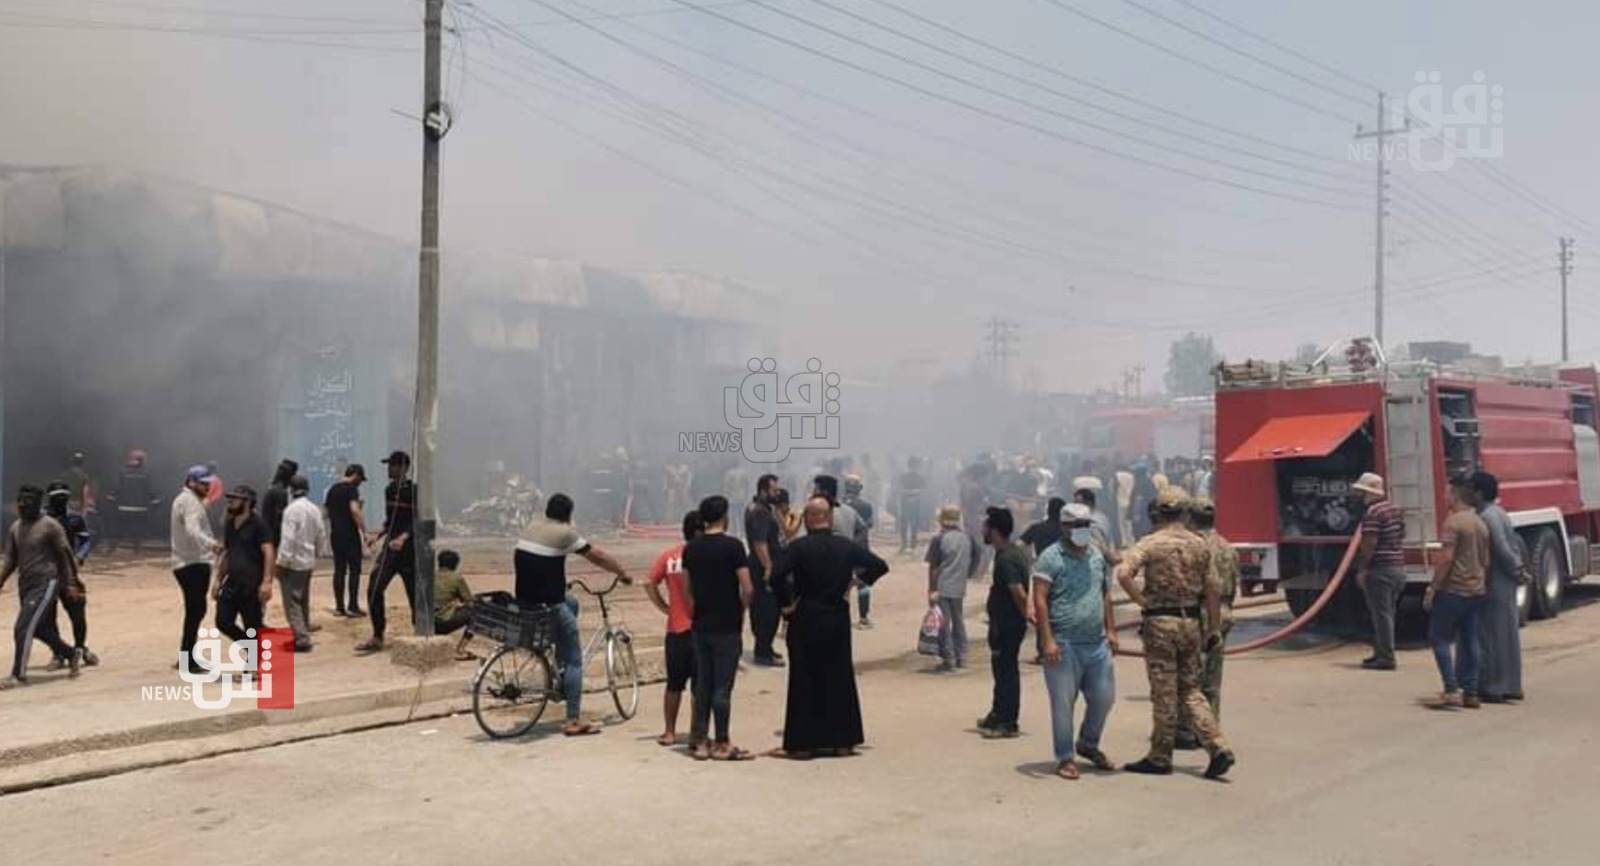 حريق بسوق "النبي" في الموصل وصهريج وقود يتسبب بإضرام النار بسيارتين في ذي قار